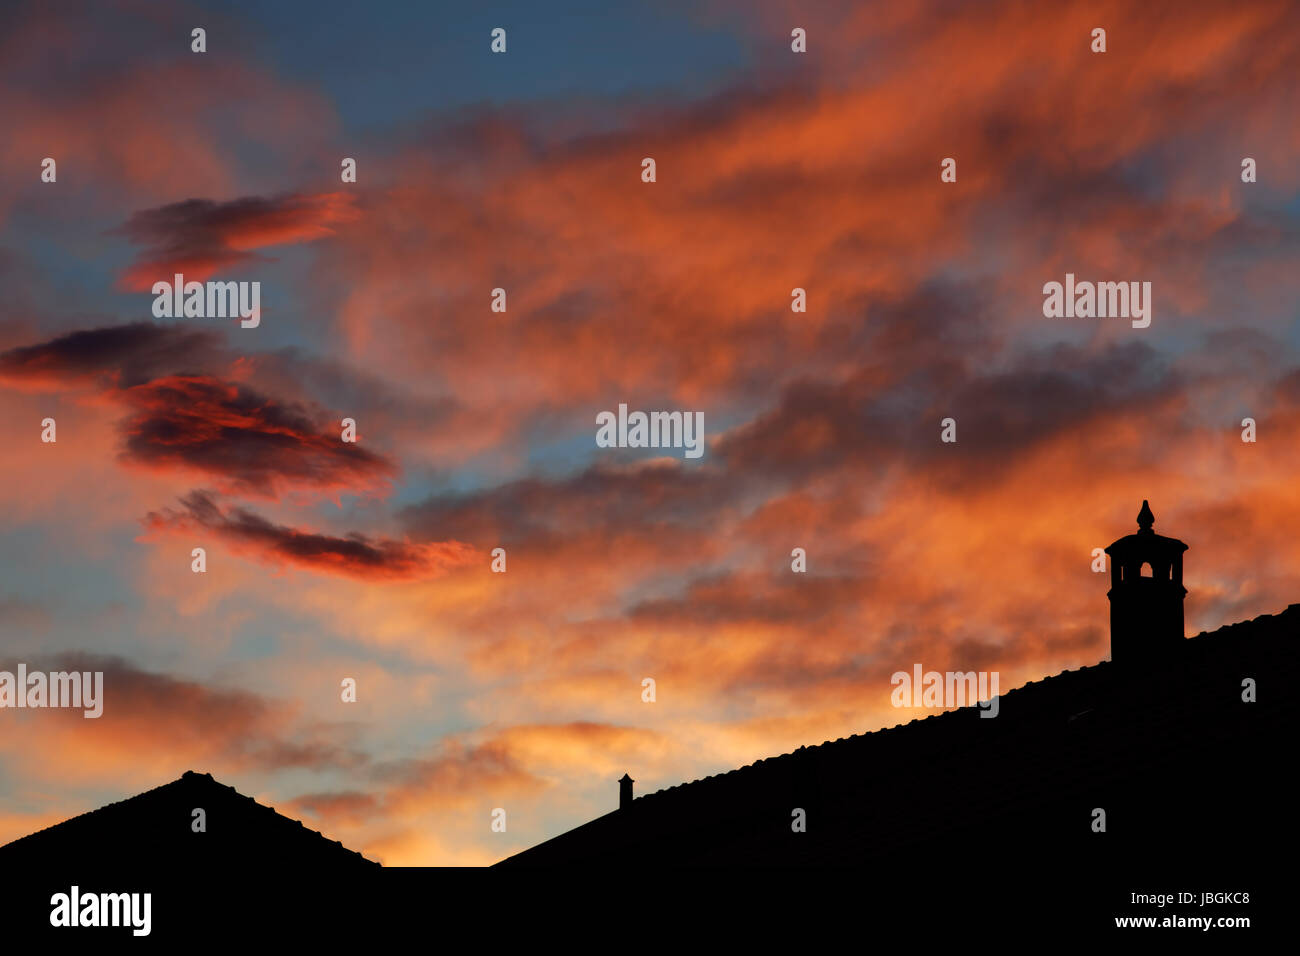 Abendrot in Italien, Dachsilhoutten, blauer Abendhimmel mit roten Wolken Stock Photo